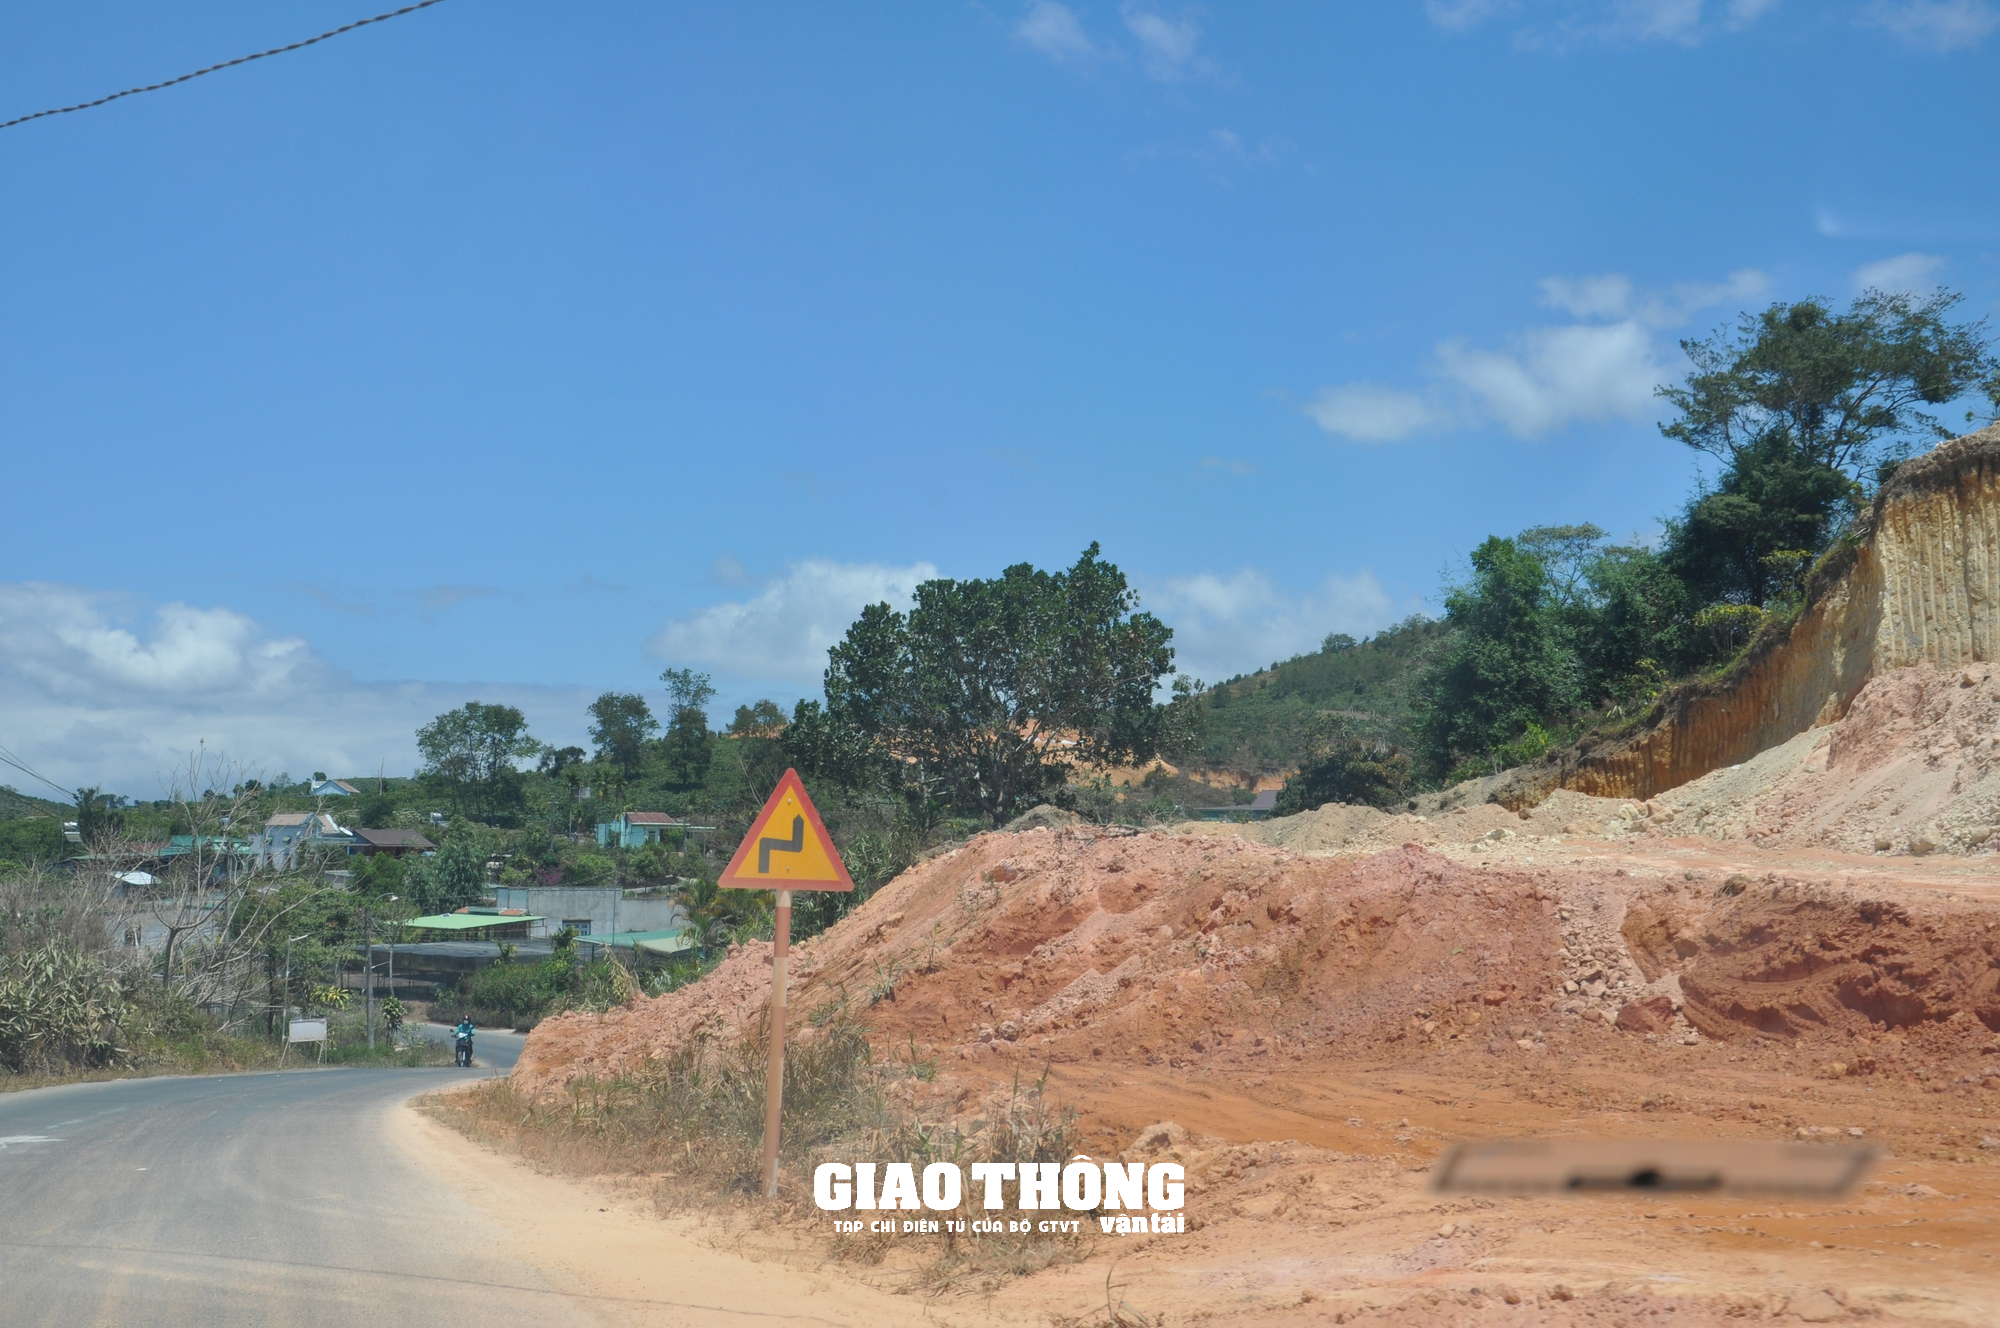 Nhức nhối nạn đào, san lấp mặt bằng dọc hành lang tuyến QL27, ĐT724 ở Lâm Đồng - Ảnh 2.